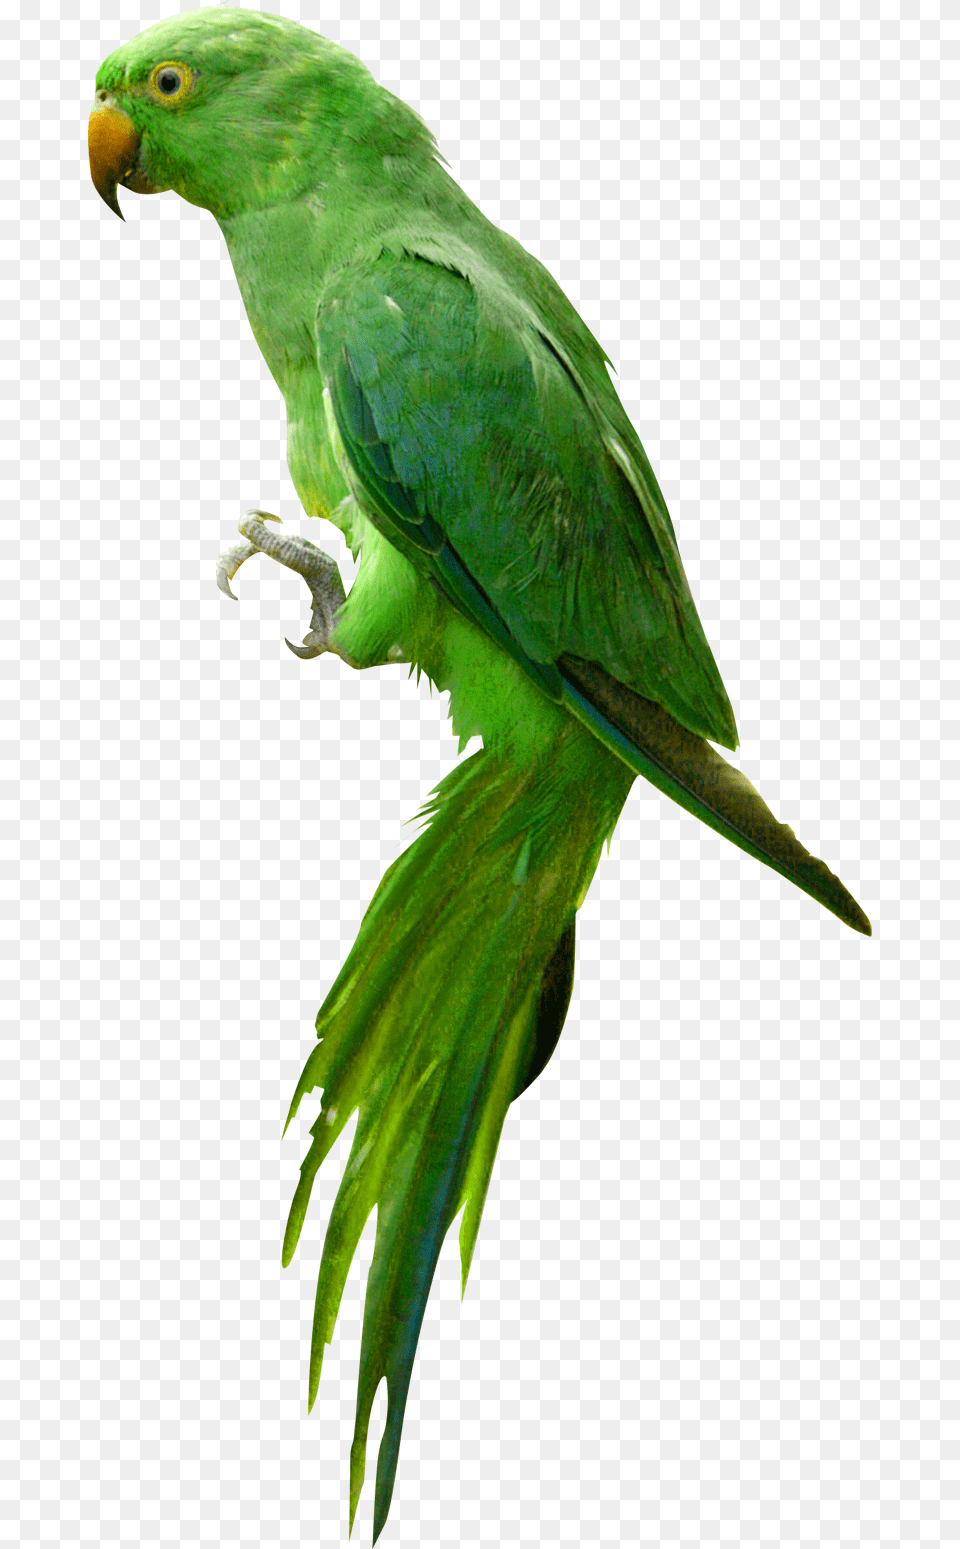 Parrot Hd, Animal, Bird, Parakeet Free Transparent Png